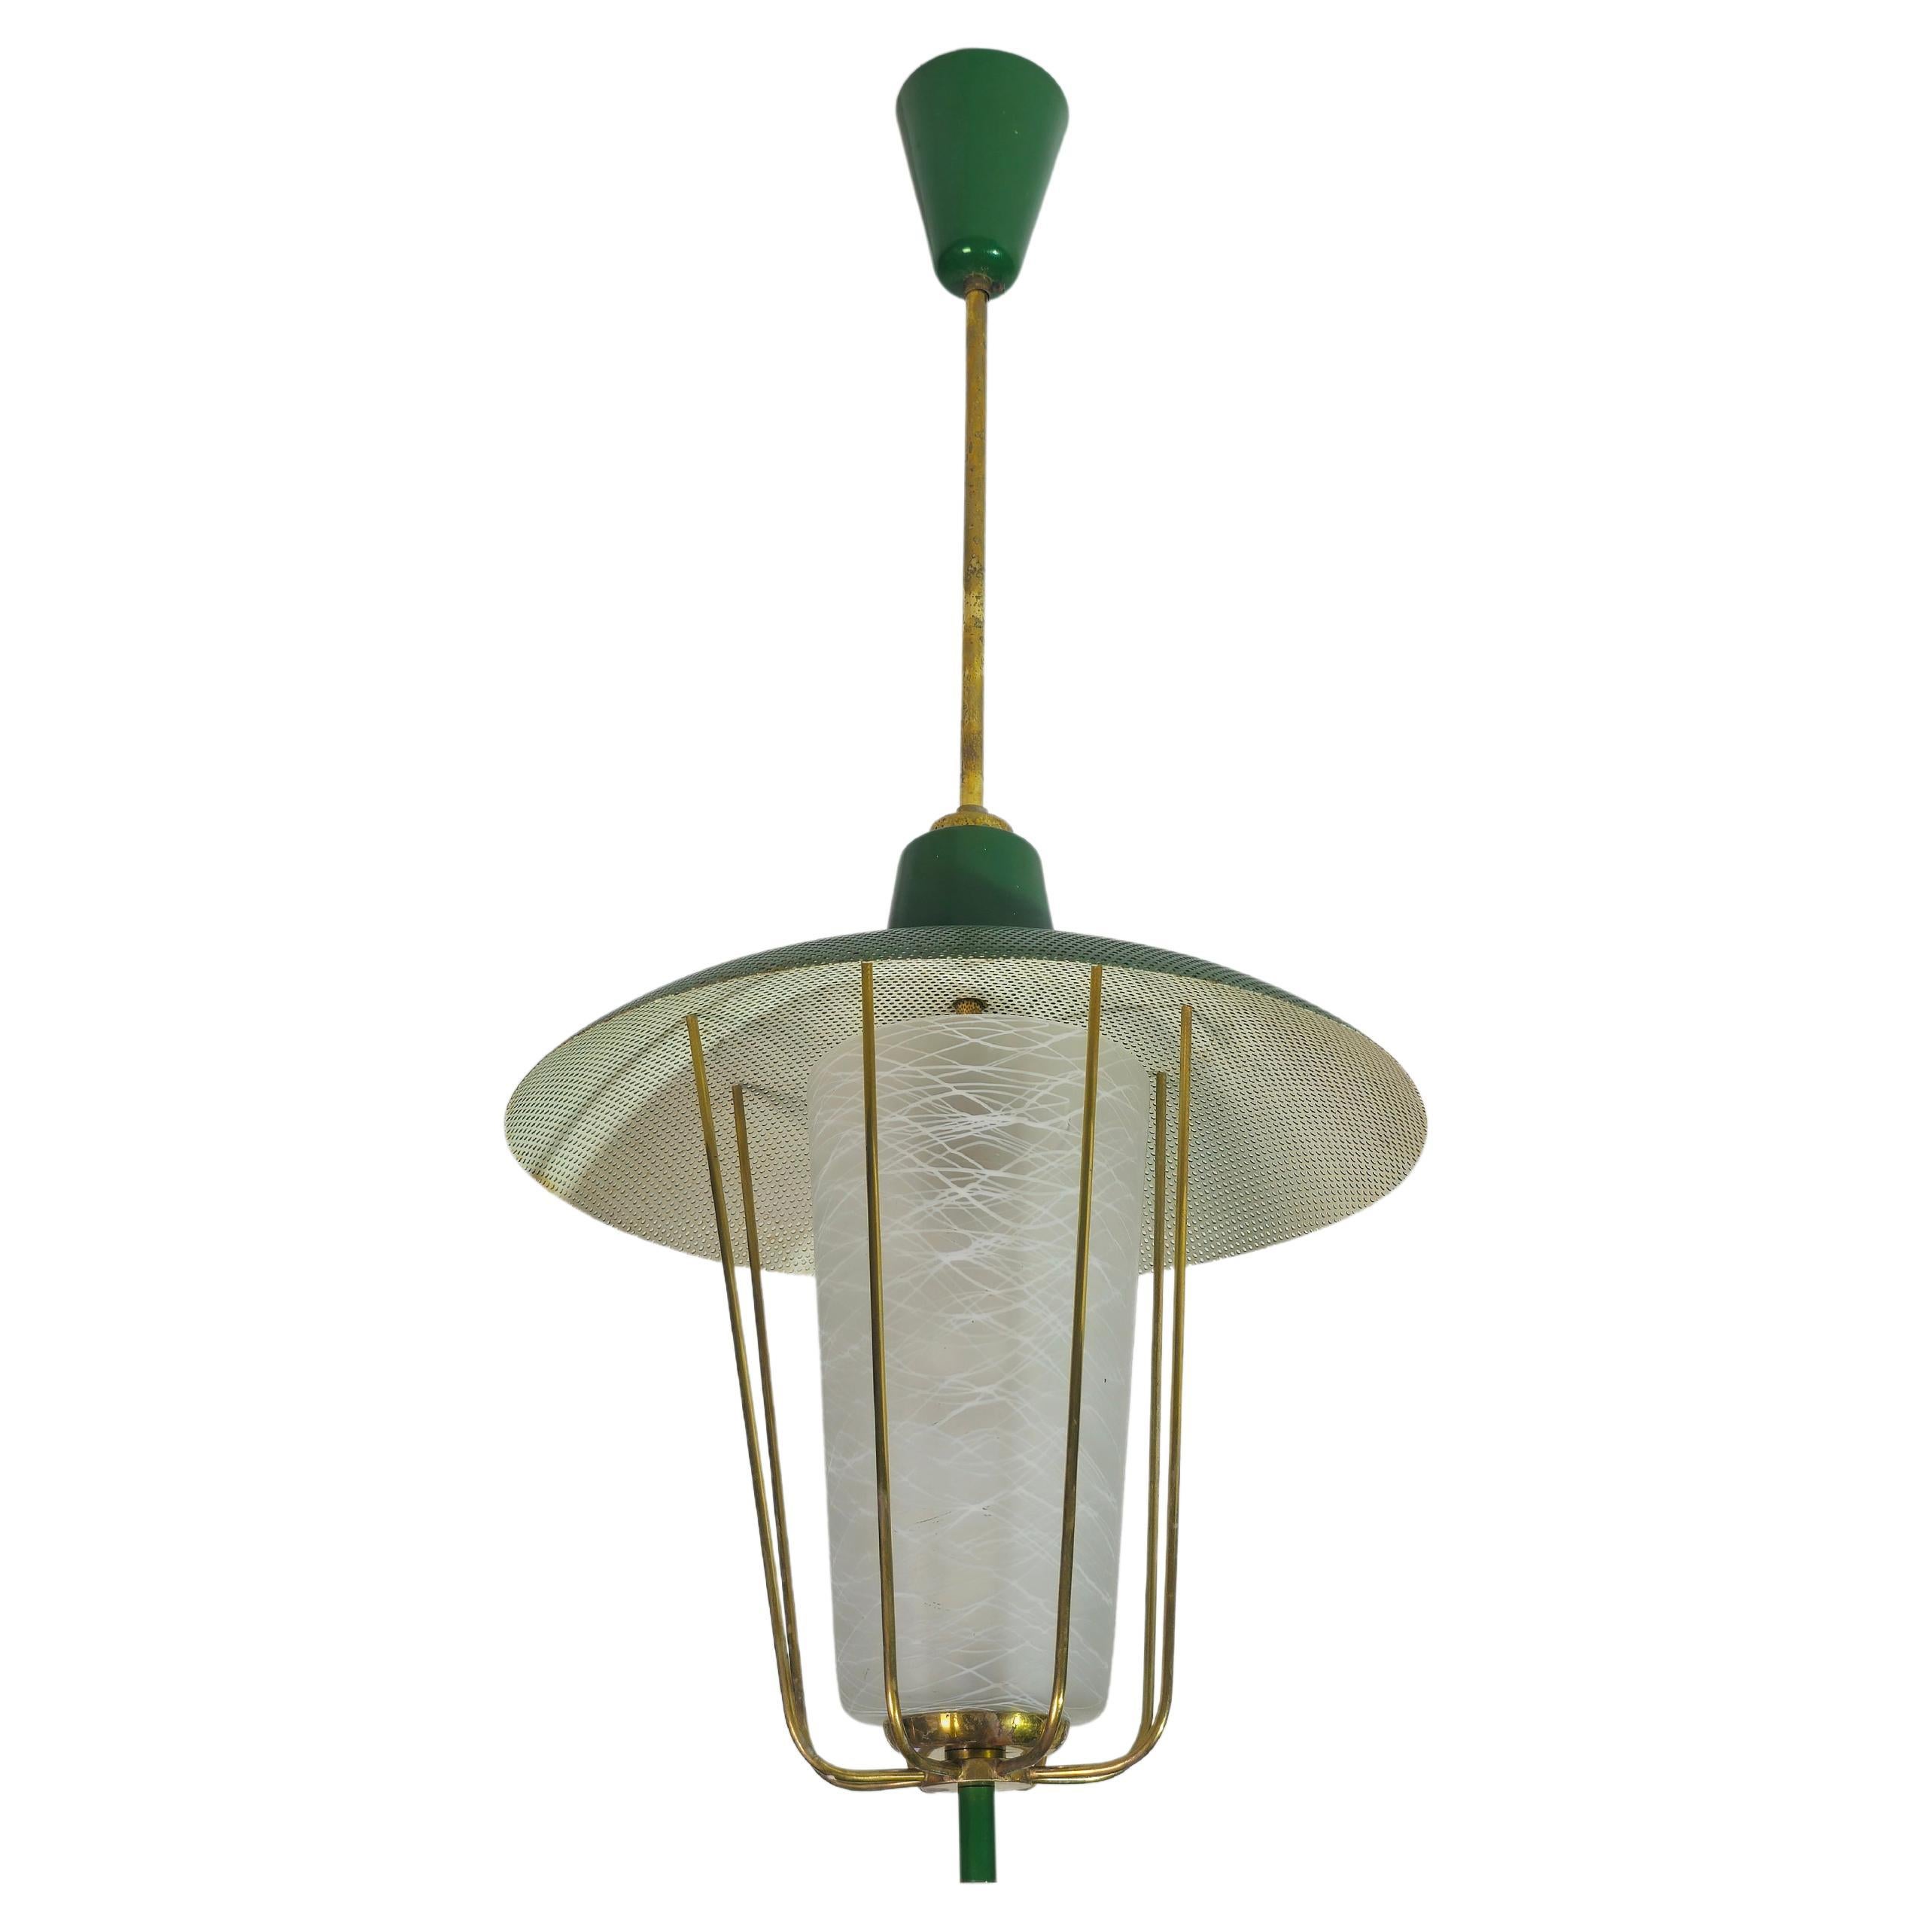 Pendant Chandelier Glass Brass Green Midcentury Modern Italian Design 1950s For Sale